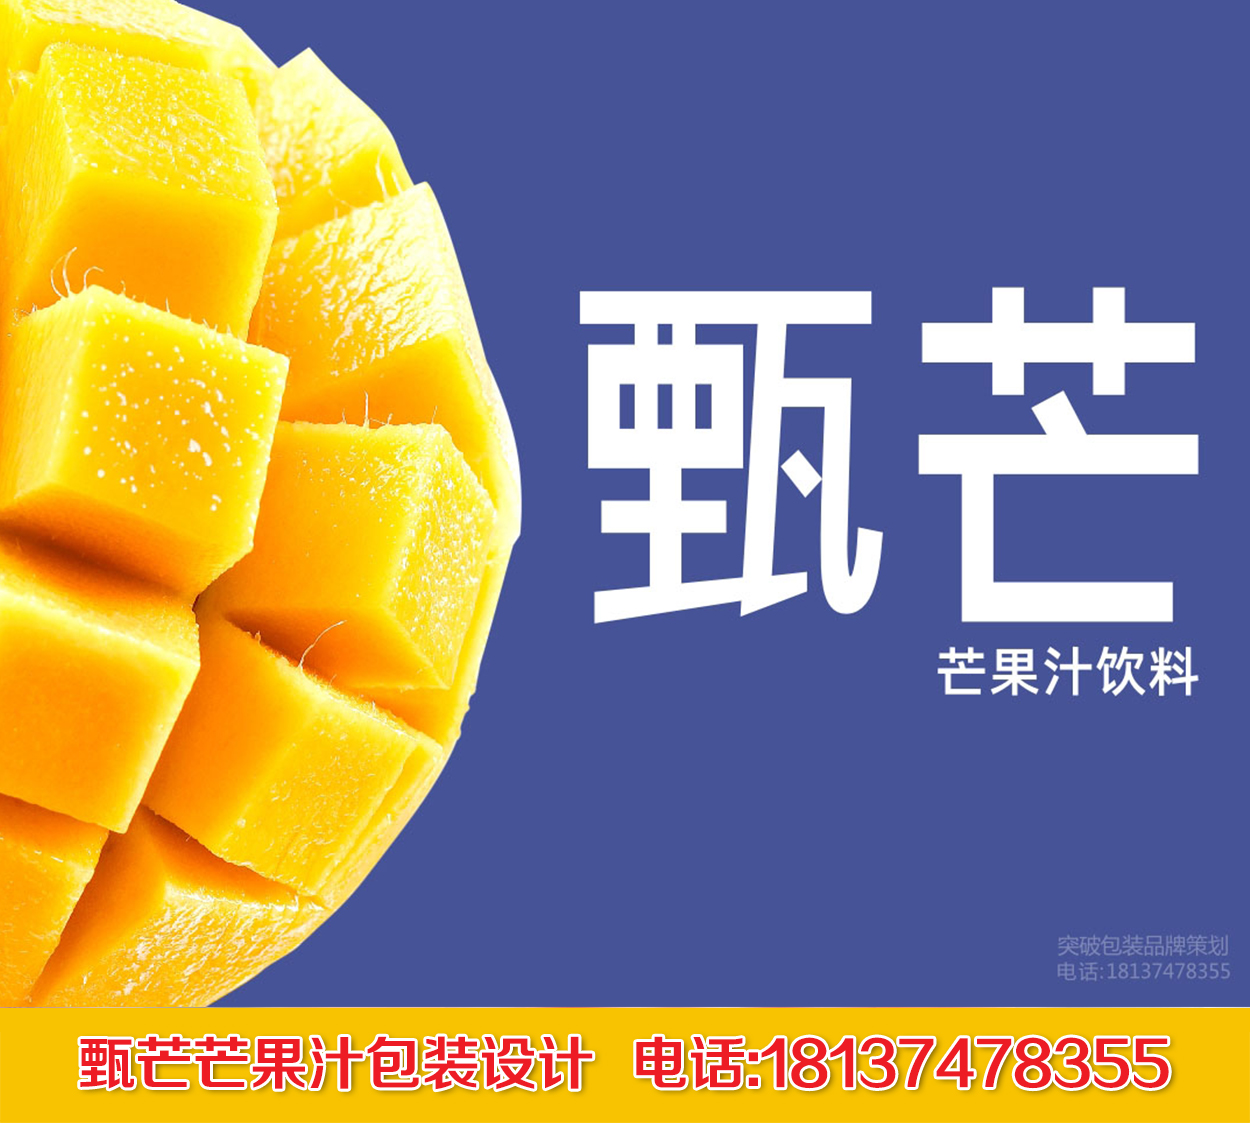 燕塞甄芒 · 芒果汁包装上海燕塞食品  | 品牌形象设计 · 视觉包装设计 · 形象礼盒设